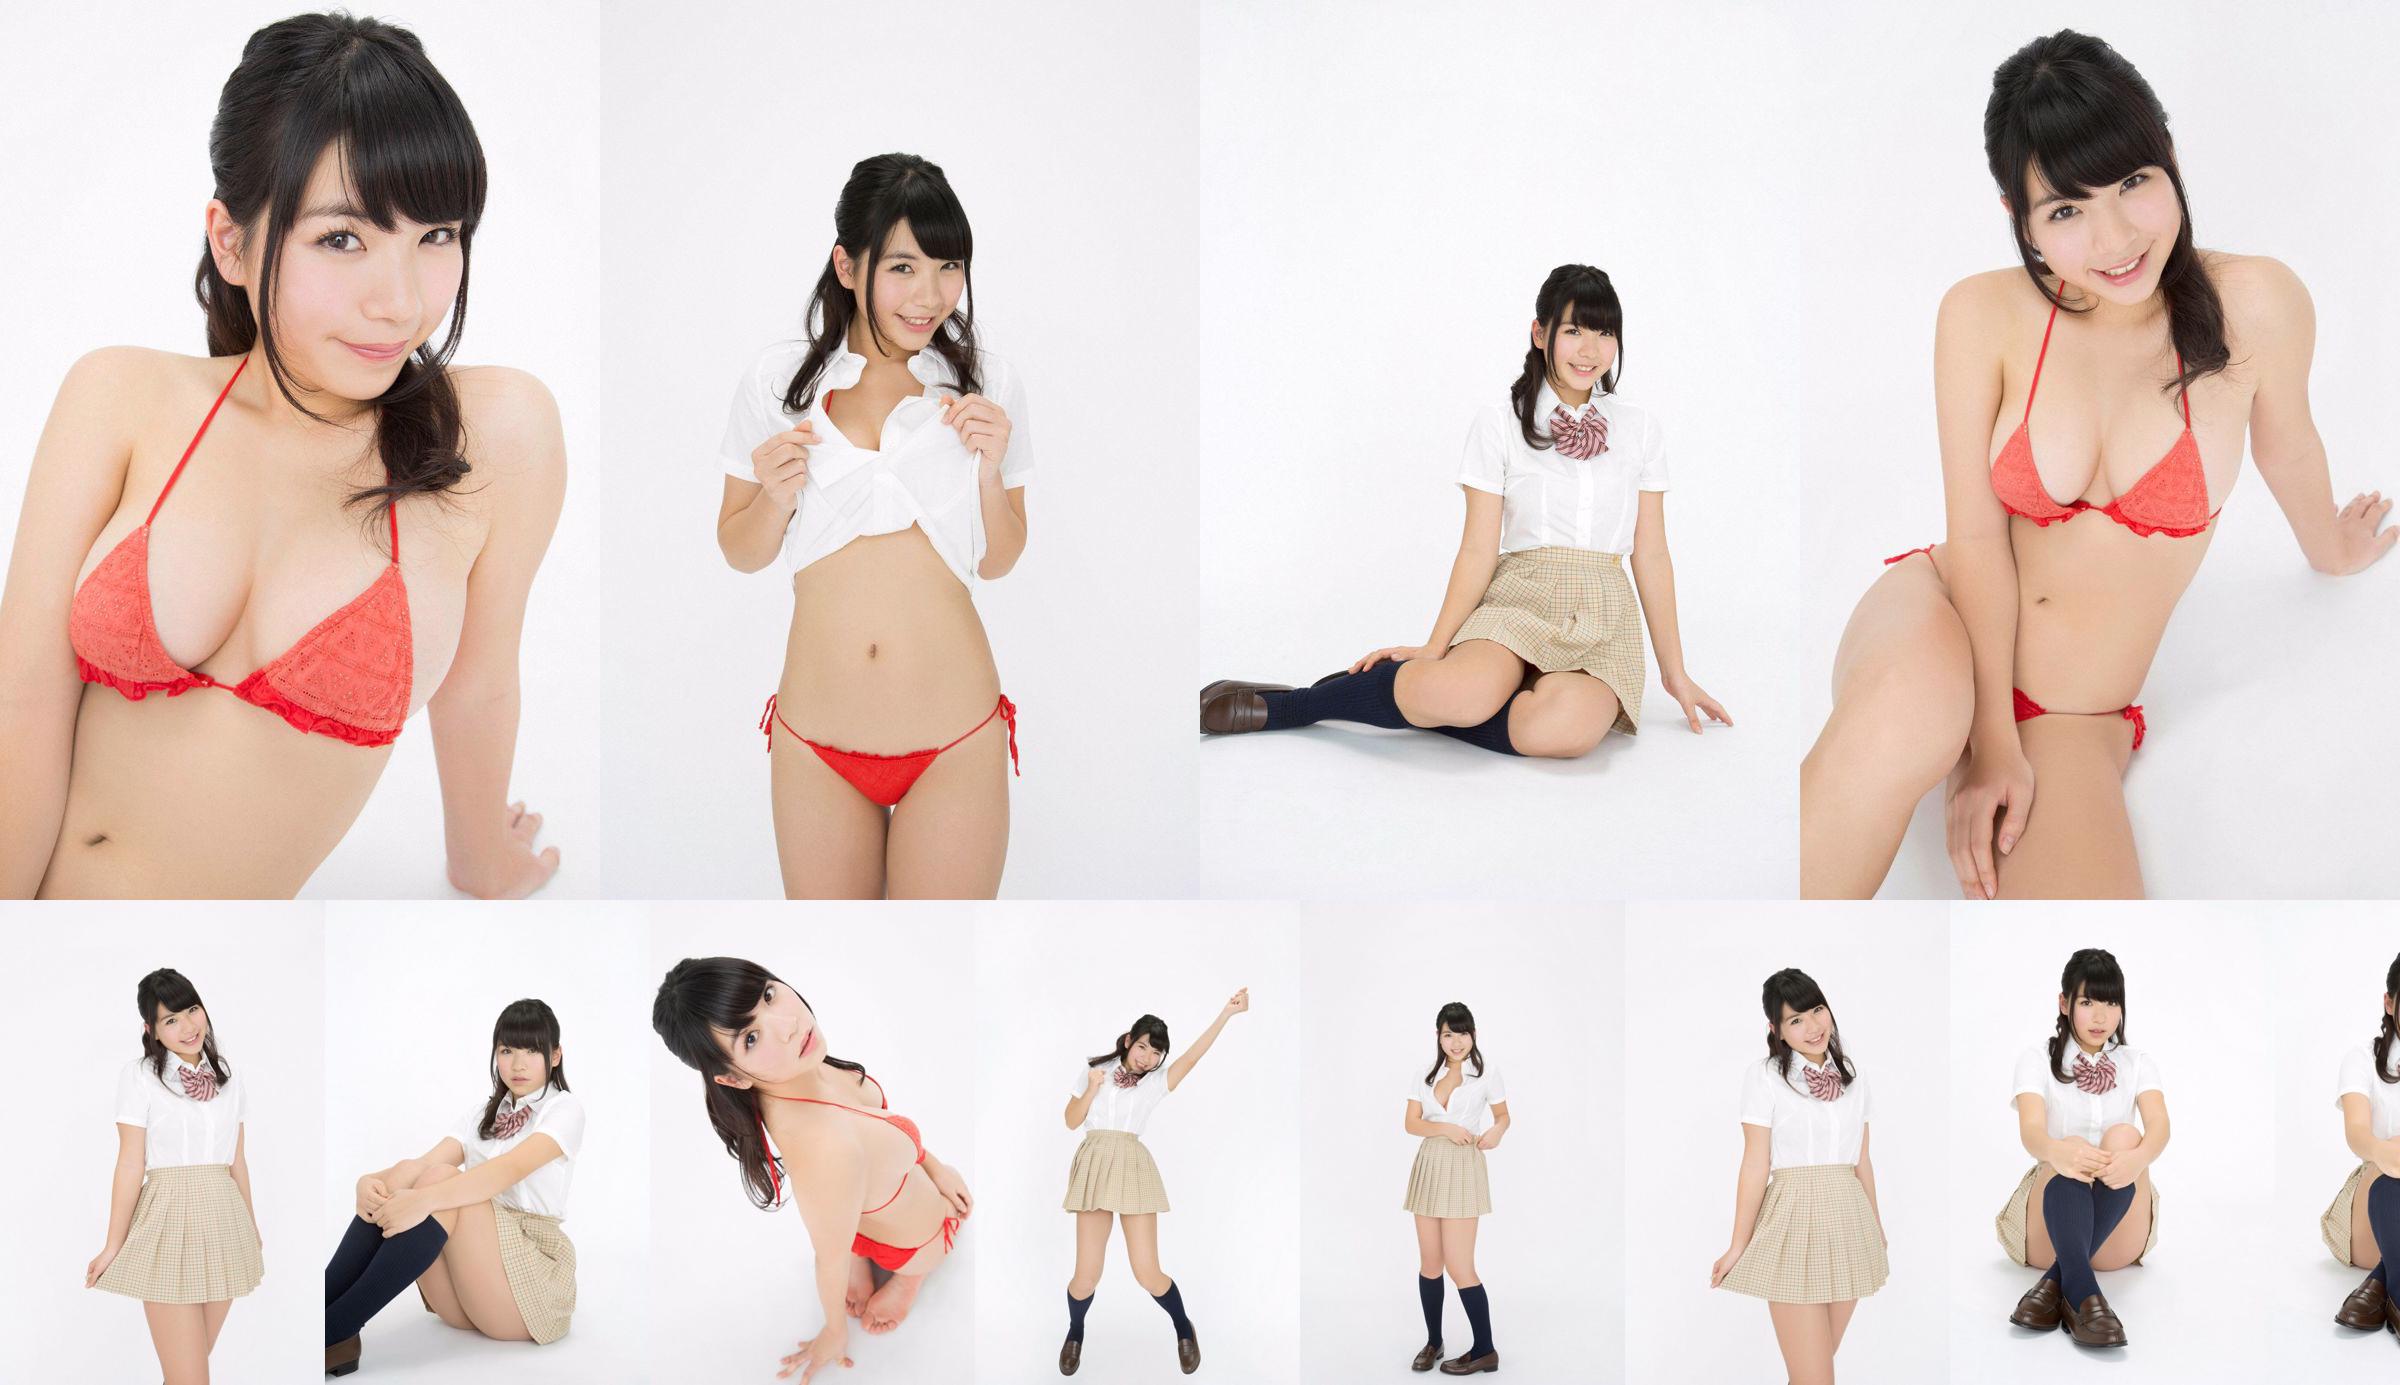 Jun Serizawa / Jun Serizawa "Một nữ sinh trung học năng động, lùn nhất Nhật Bản グ ラ ド ル nhập học! No.eeca45 Trang 3